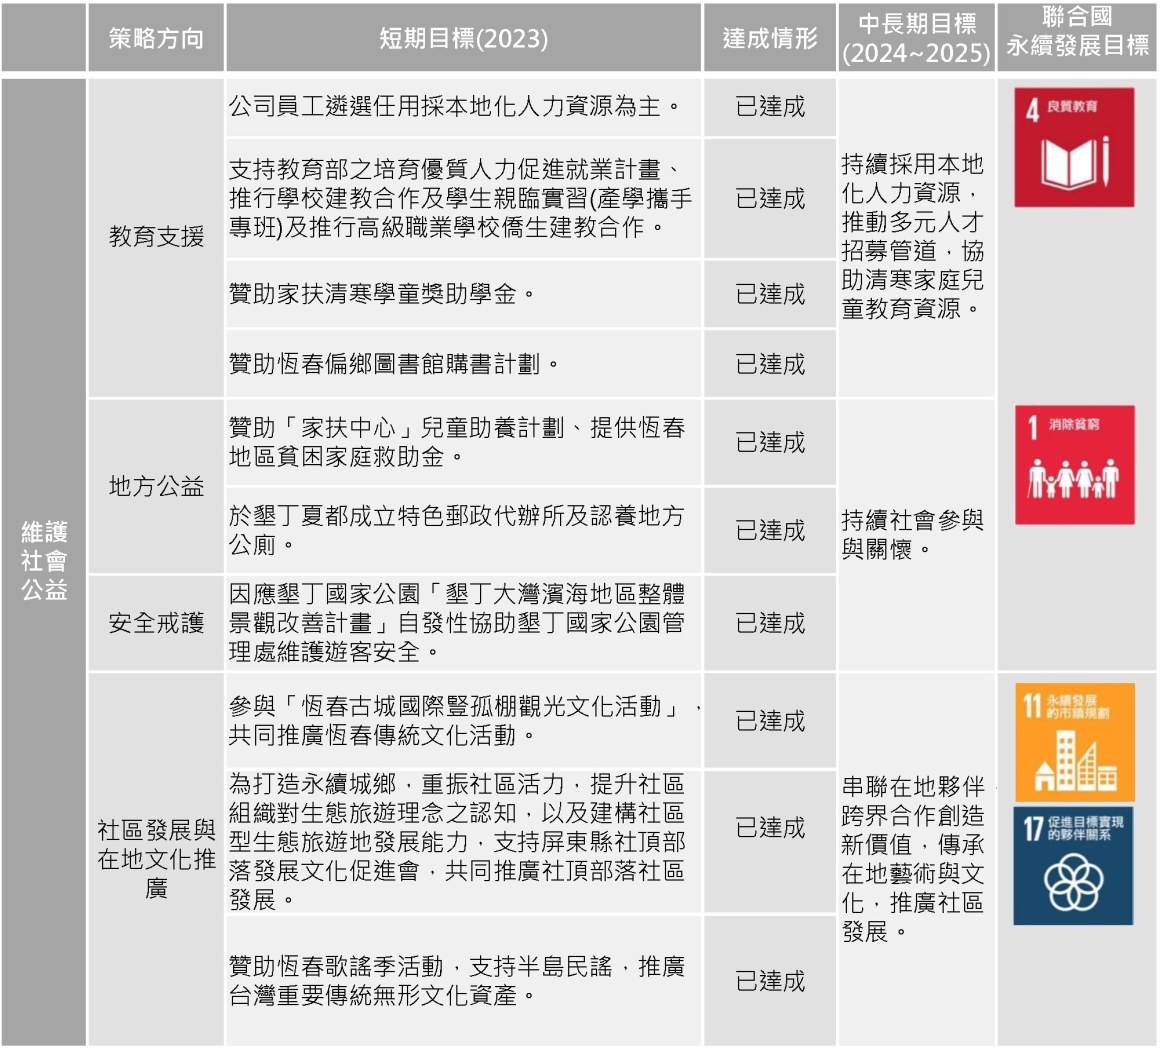 2023-永續目標(ESG)-中文版_S